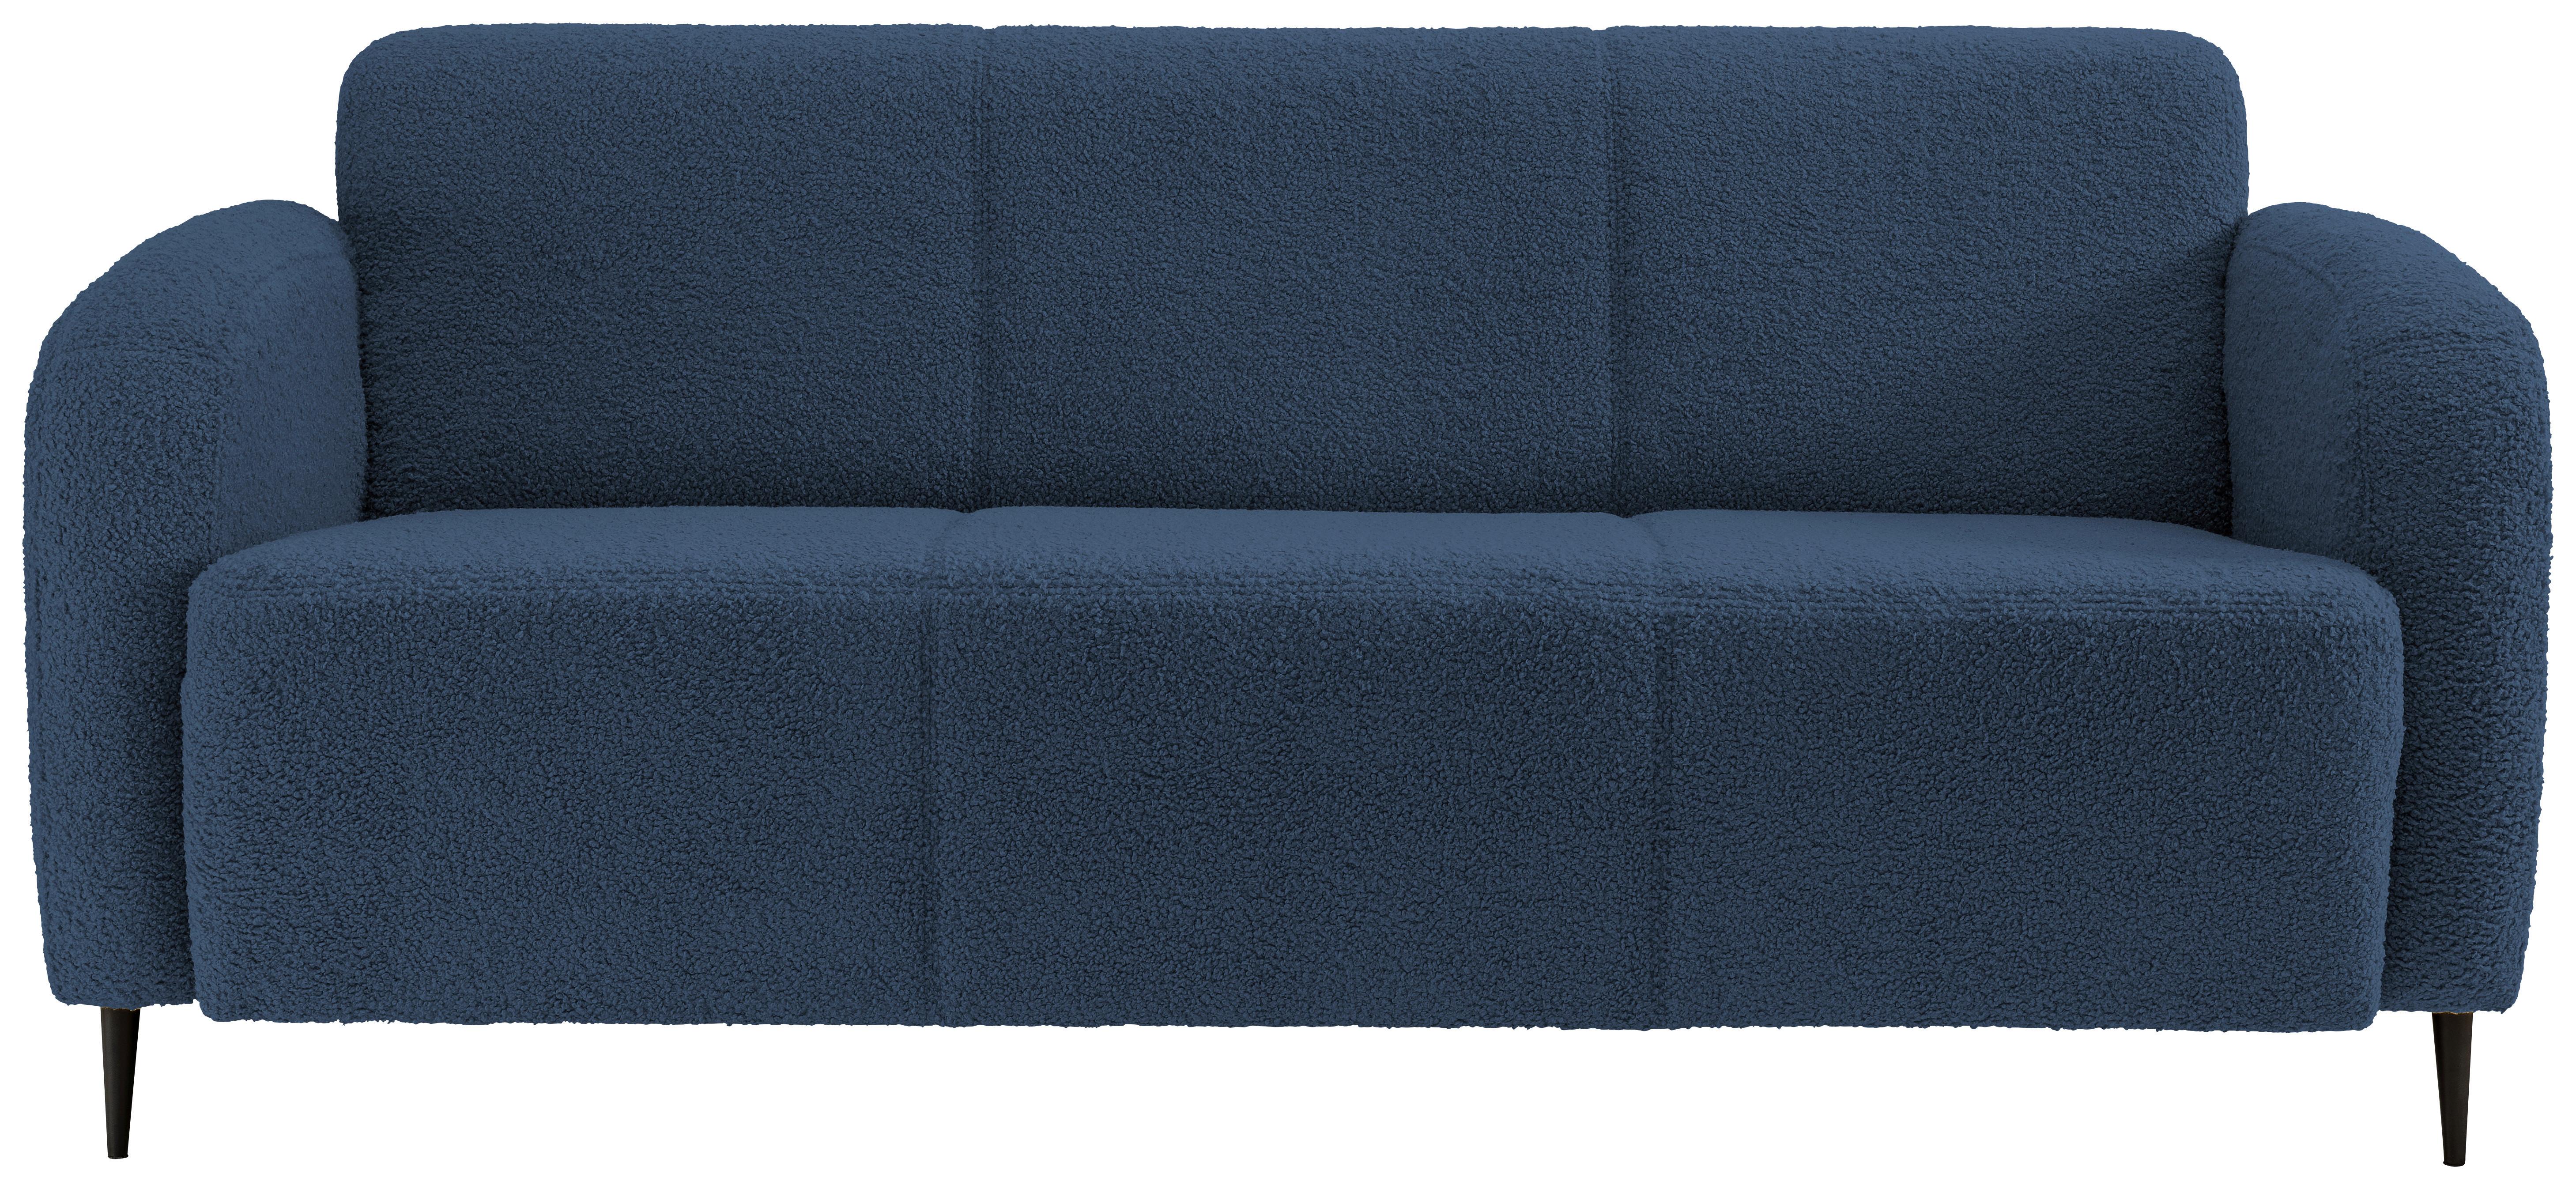 3-Sitzer-Sofa Marone Blau Teddystoff - Blau/Schwarz, MODERN, Textil (185/76/90cm) - Livetastic